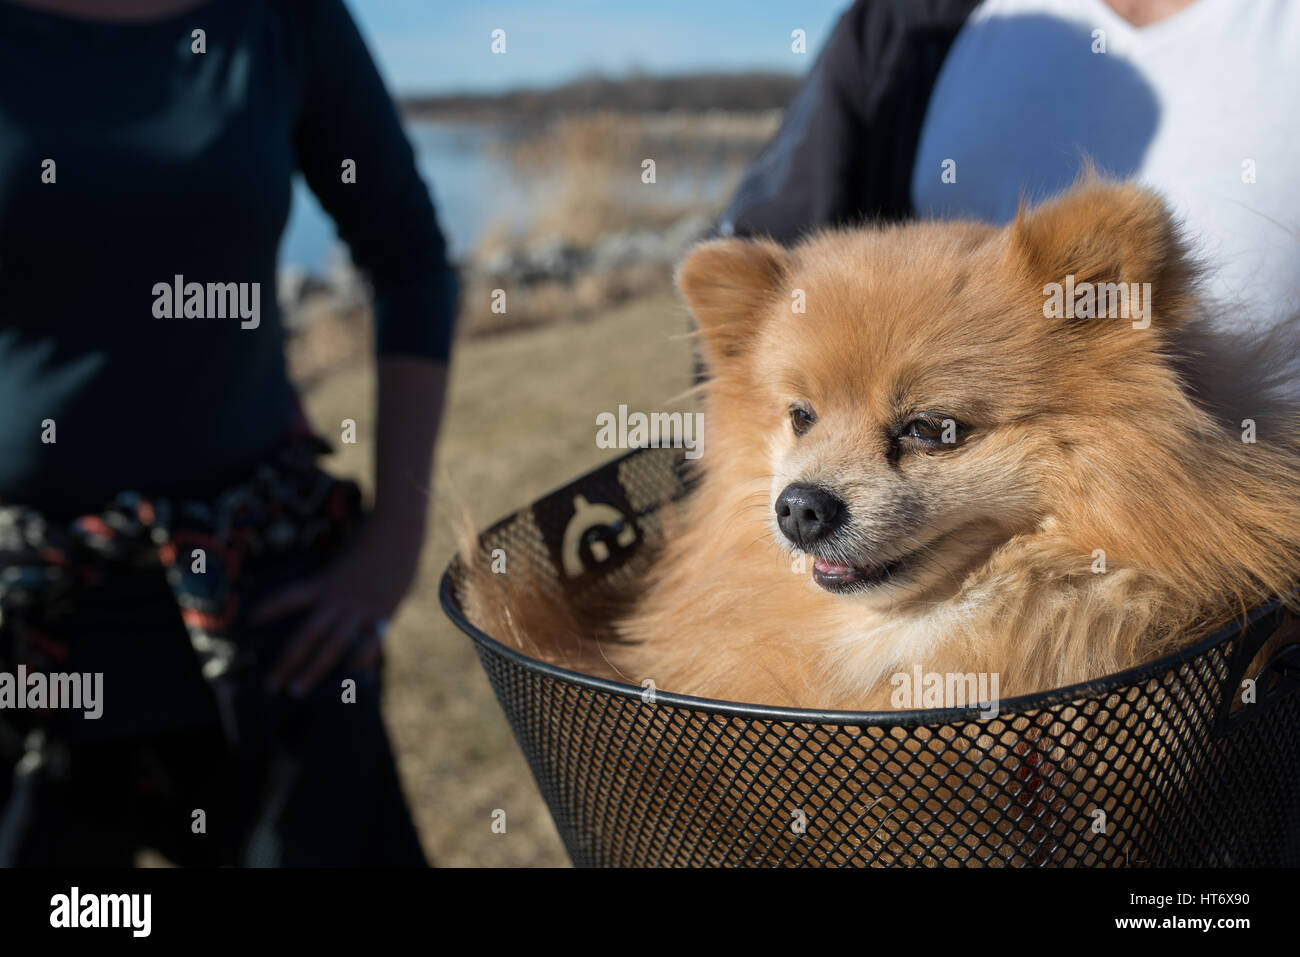 Cute little Pomeranian in a bike basket Stock Photo - Alamy